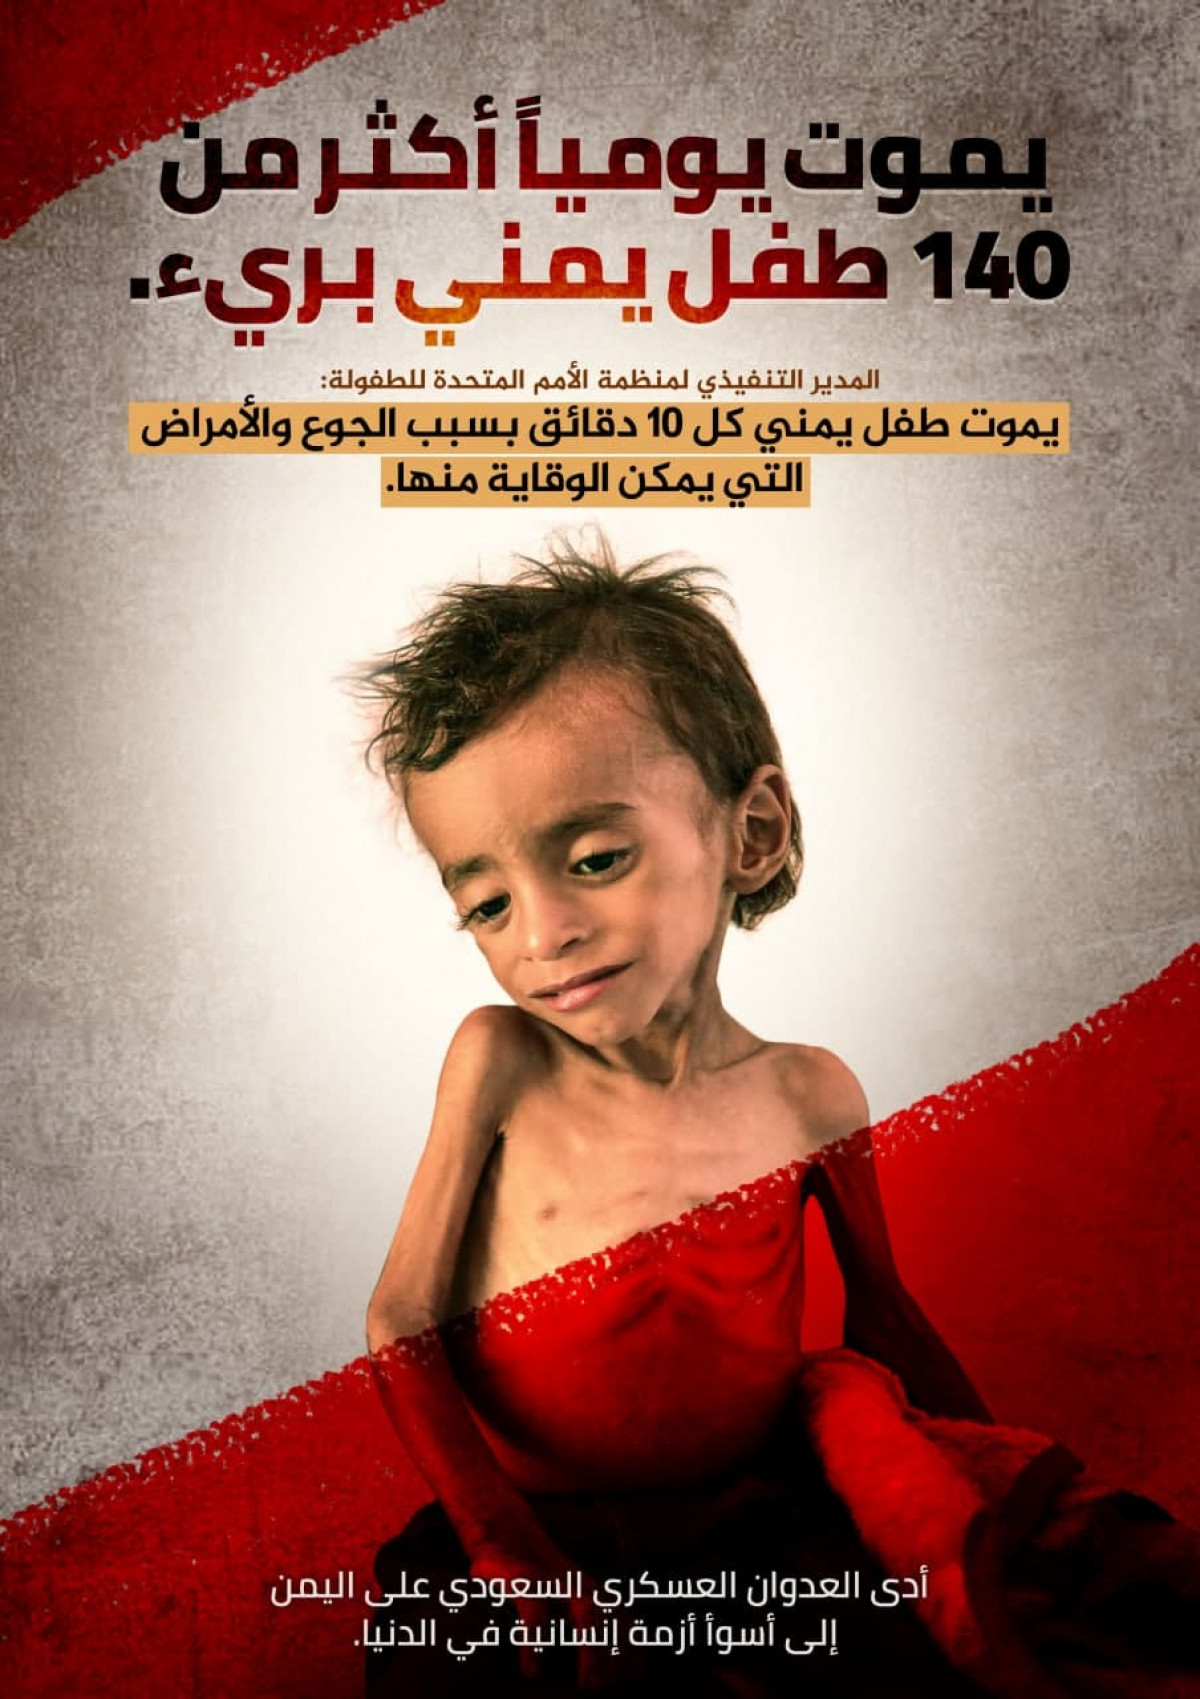 يموت يومياً أكثر من 140 طفل يمني برئ